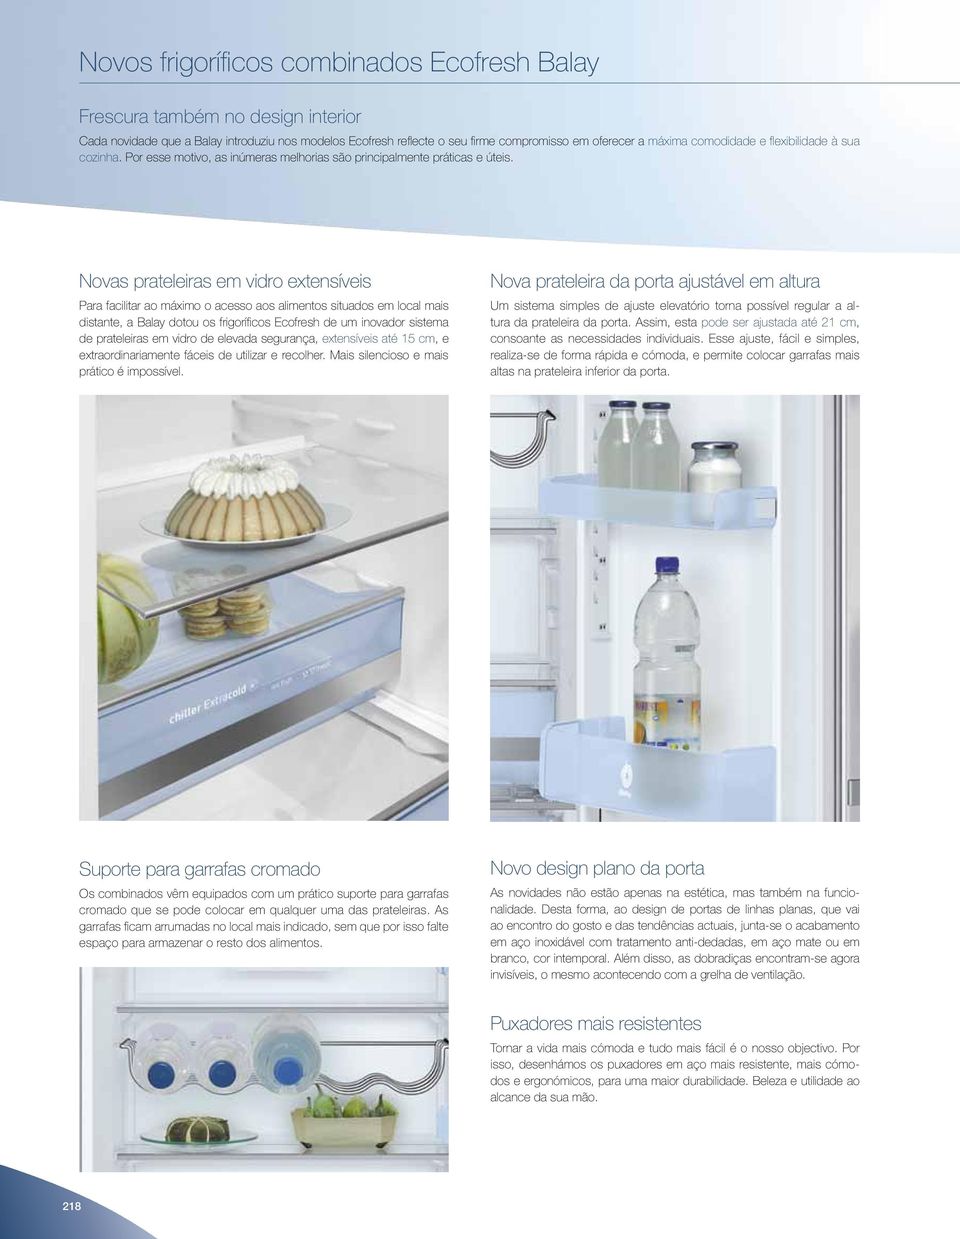 Novas prateleiras em vidro extensíveis Para facilitar ao máximo o acesso aos alimentos situados em local mais distante, a Balay dotou os frigoríficos Ecofresh de um inovador sistema de prateleiras em